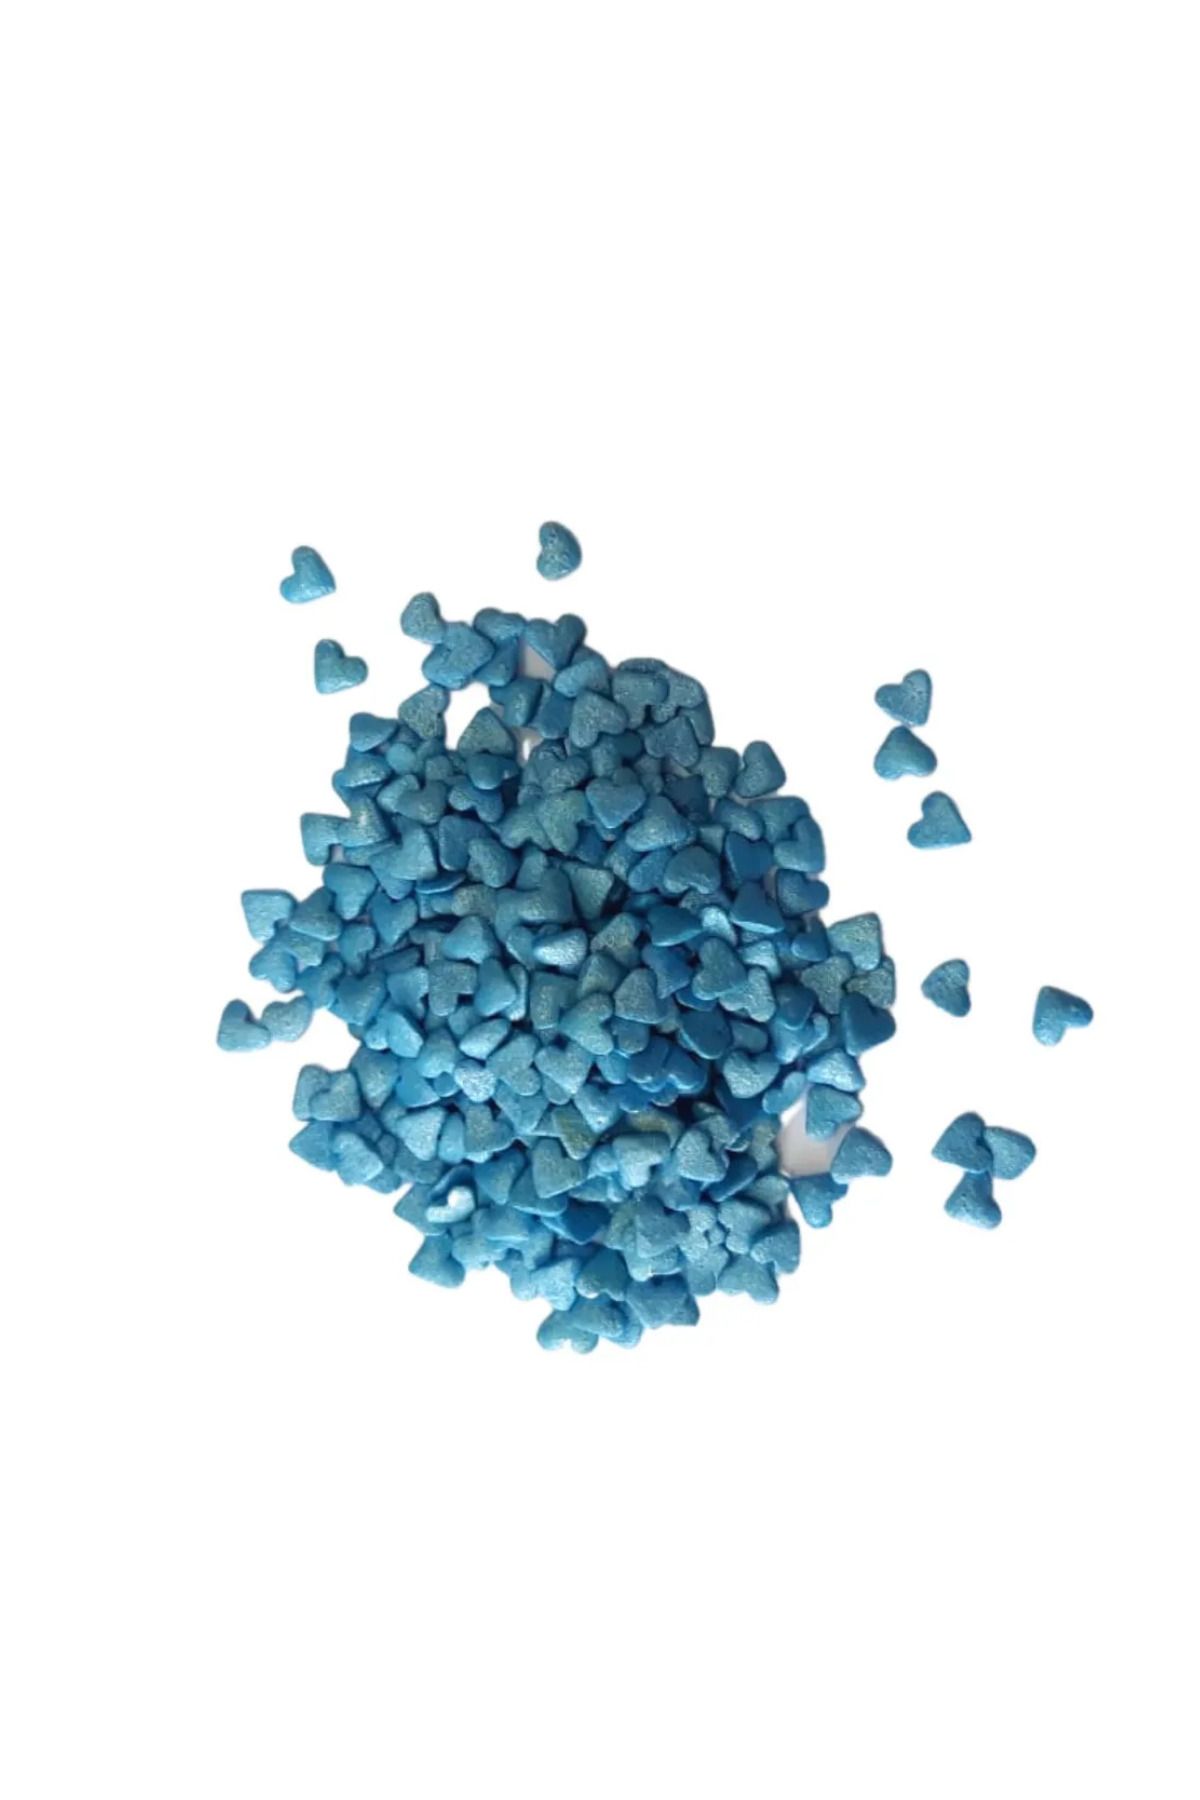 Dr. Gusto Yenilebilir Confeti Şeker Kalp Mavi Renk (70 GR)